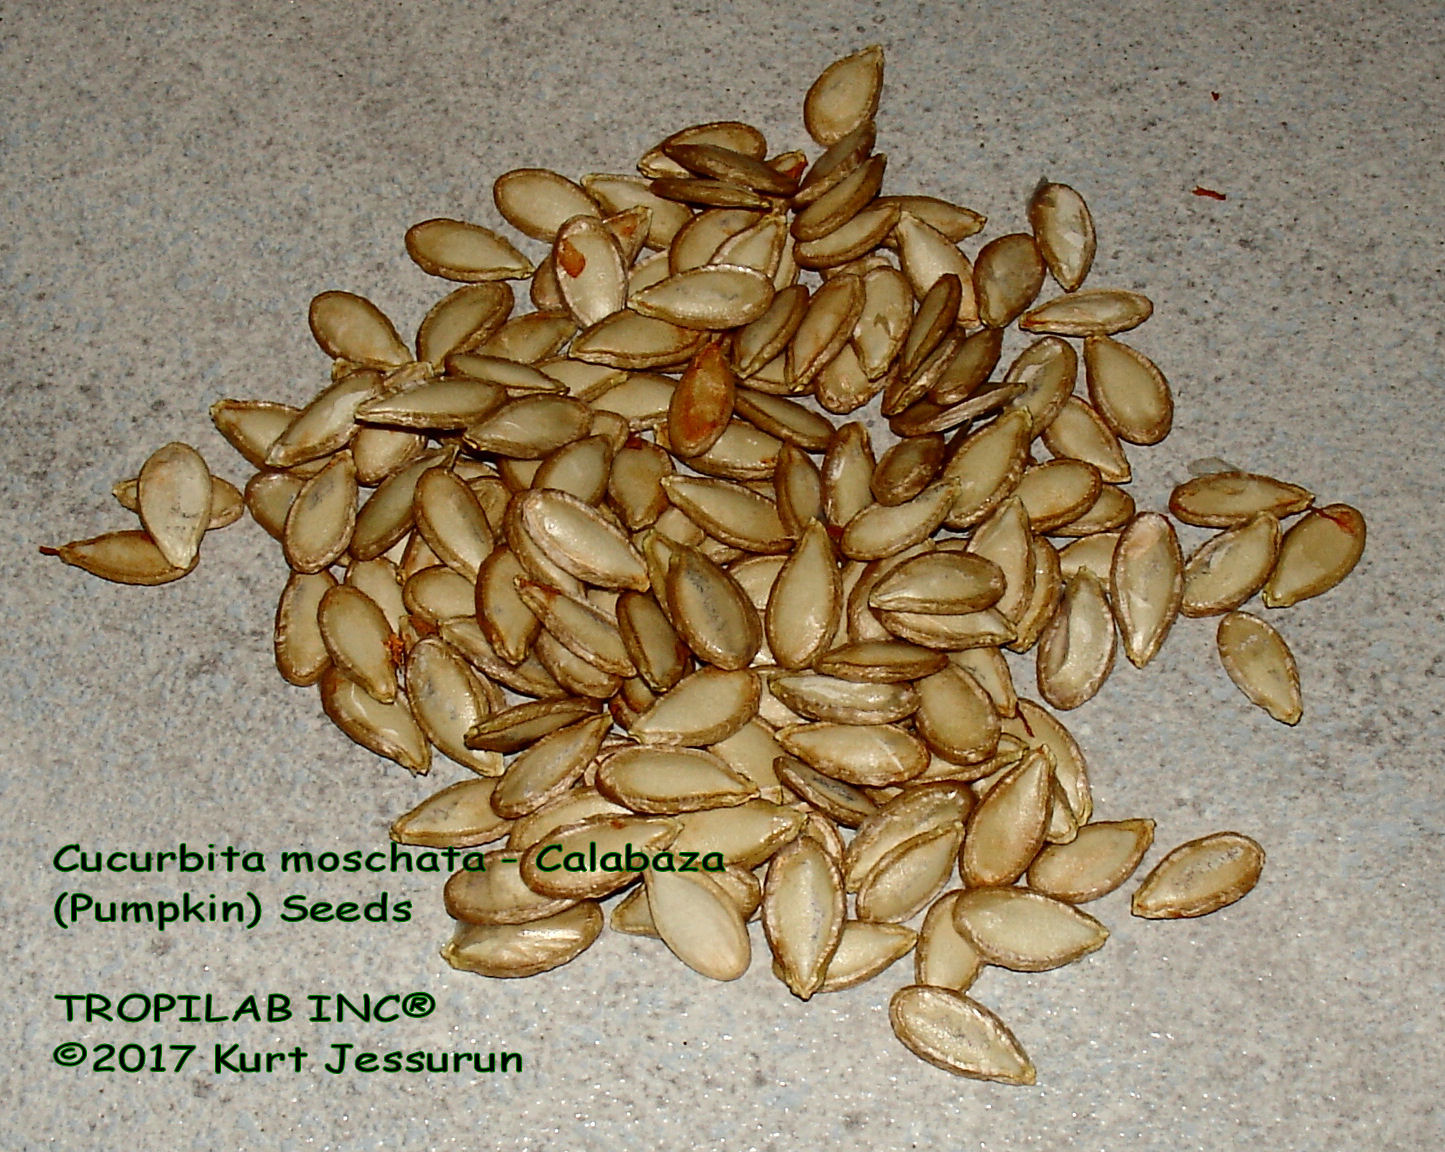 Cucurbita moschata (Calabaza) seeds